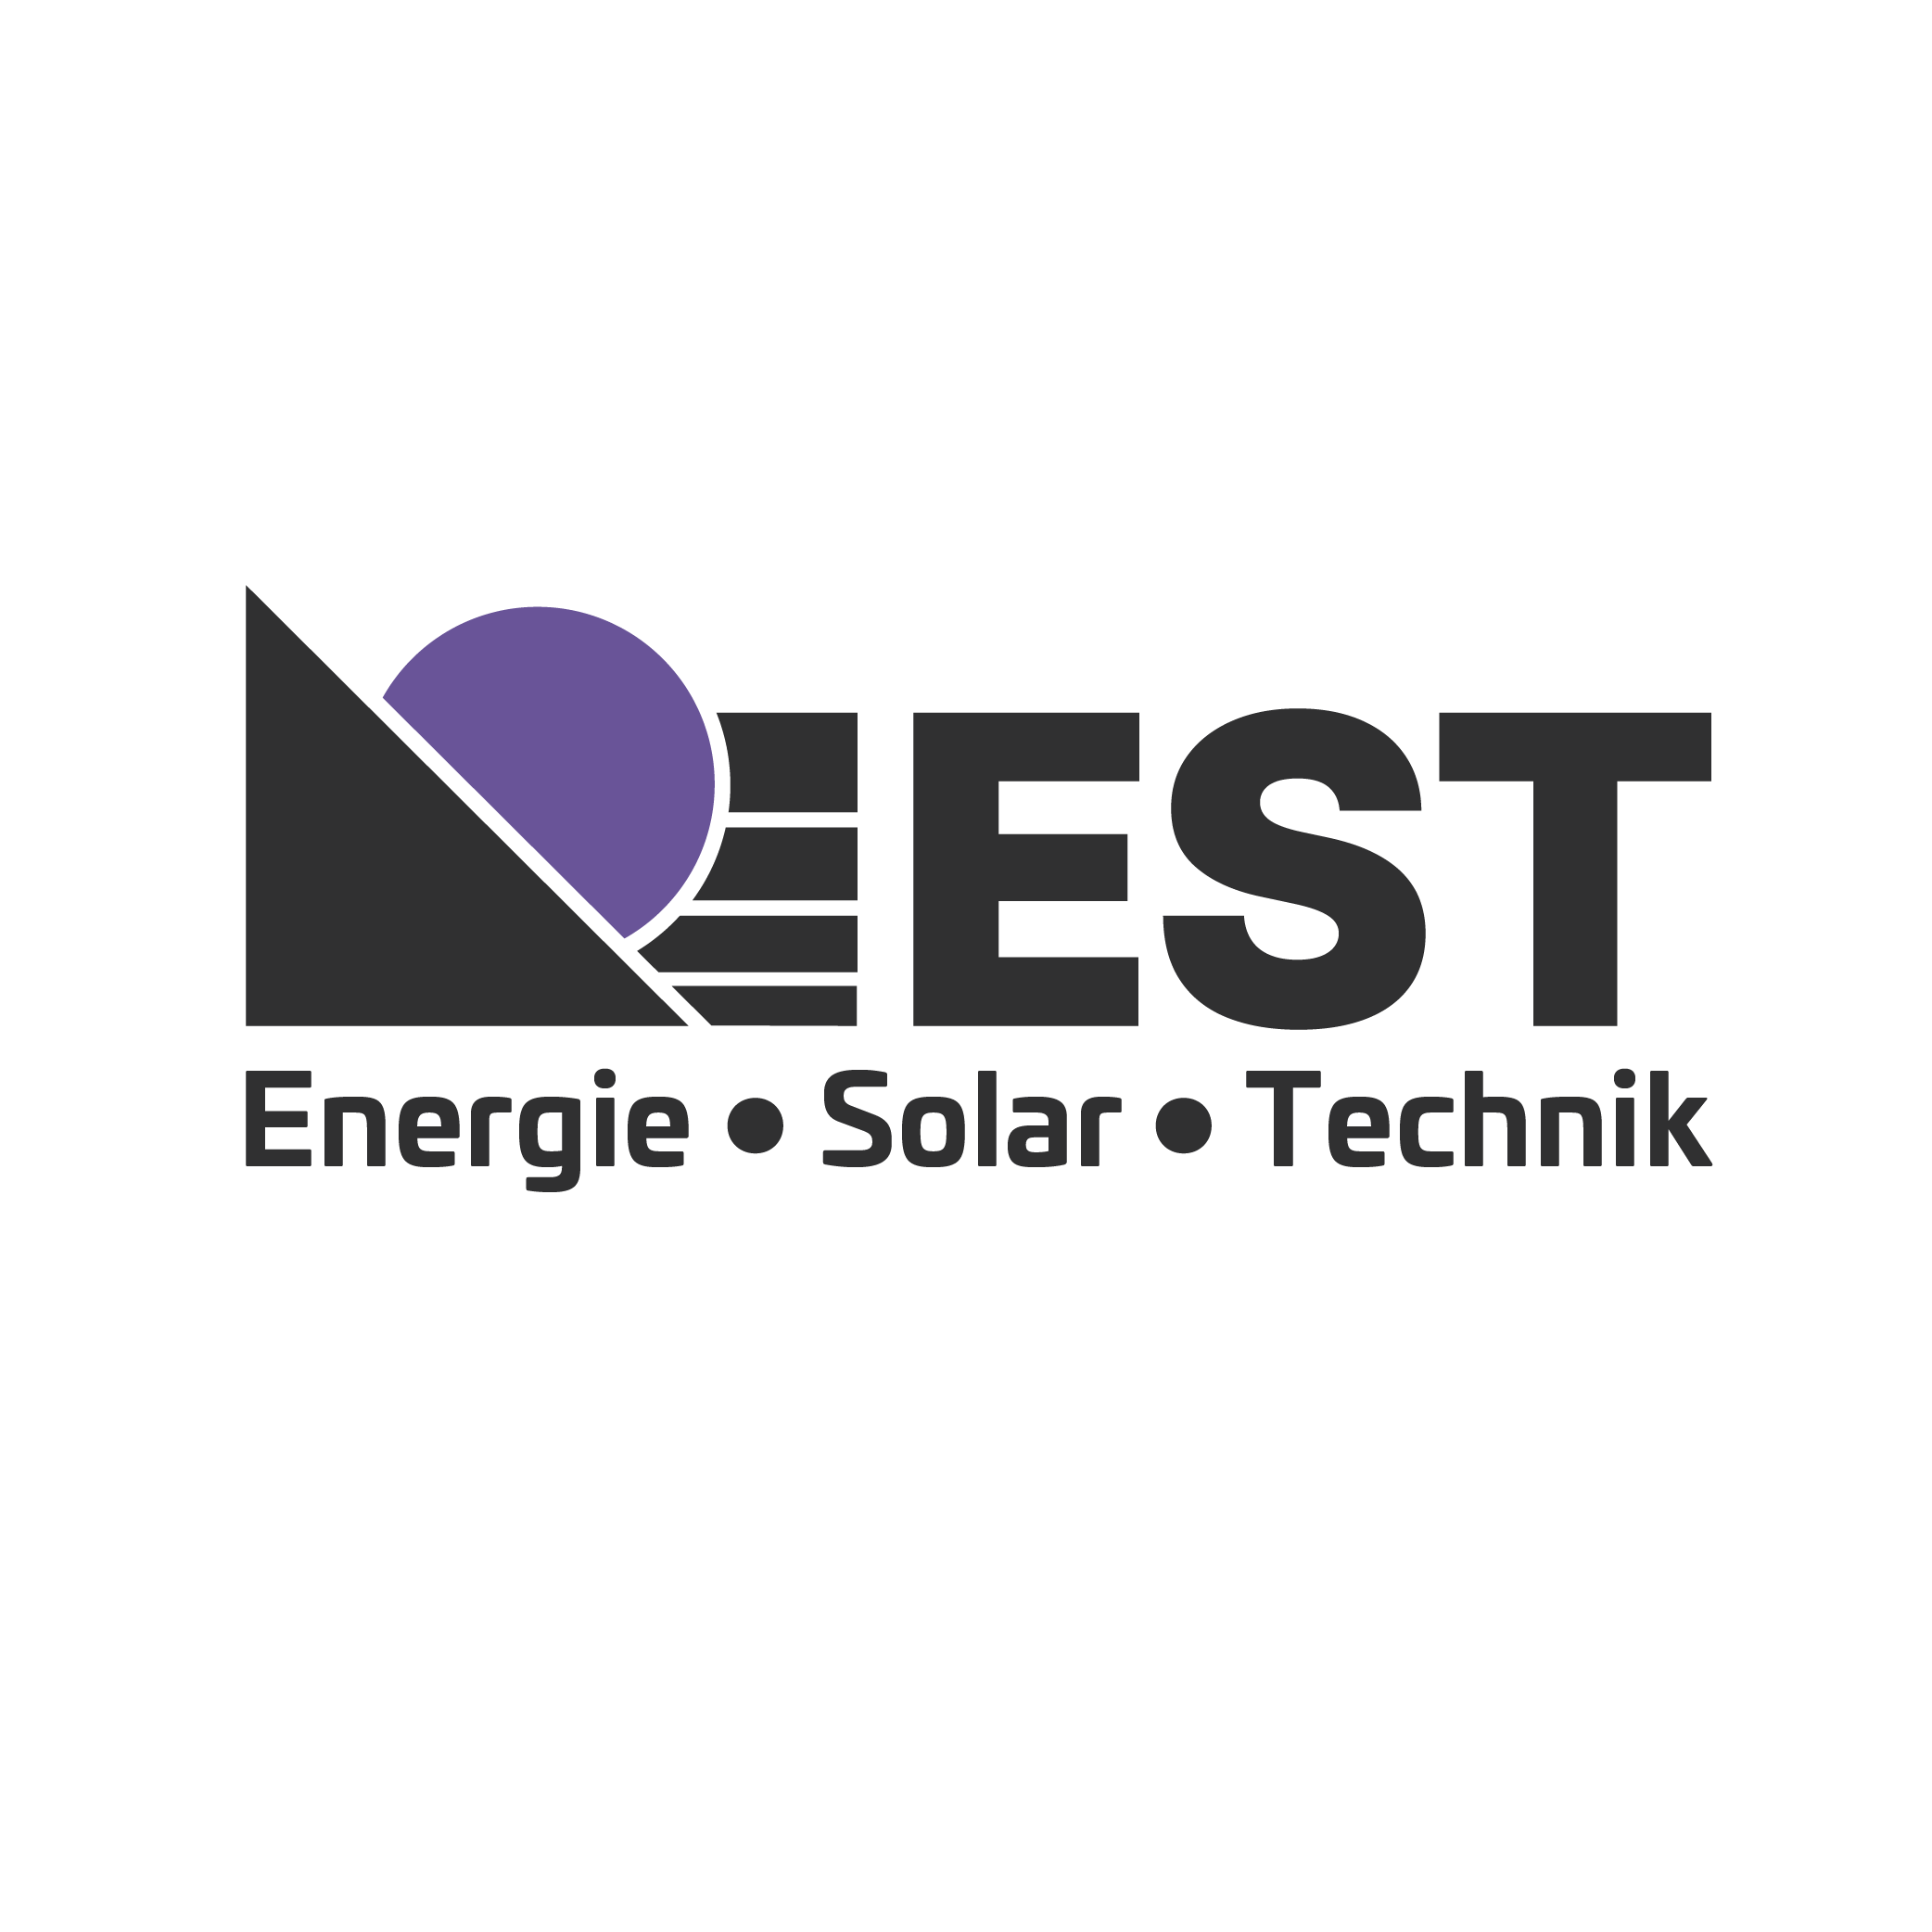 Das Branding von EST-Solar ist frisch und flexibel. Es hat unterschiedliche Varianten und Farben. Dadurch lebt und bebt die Marke.